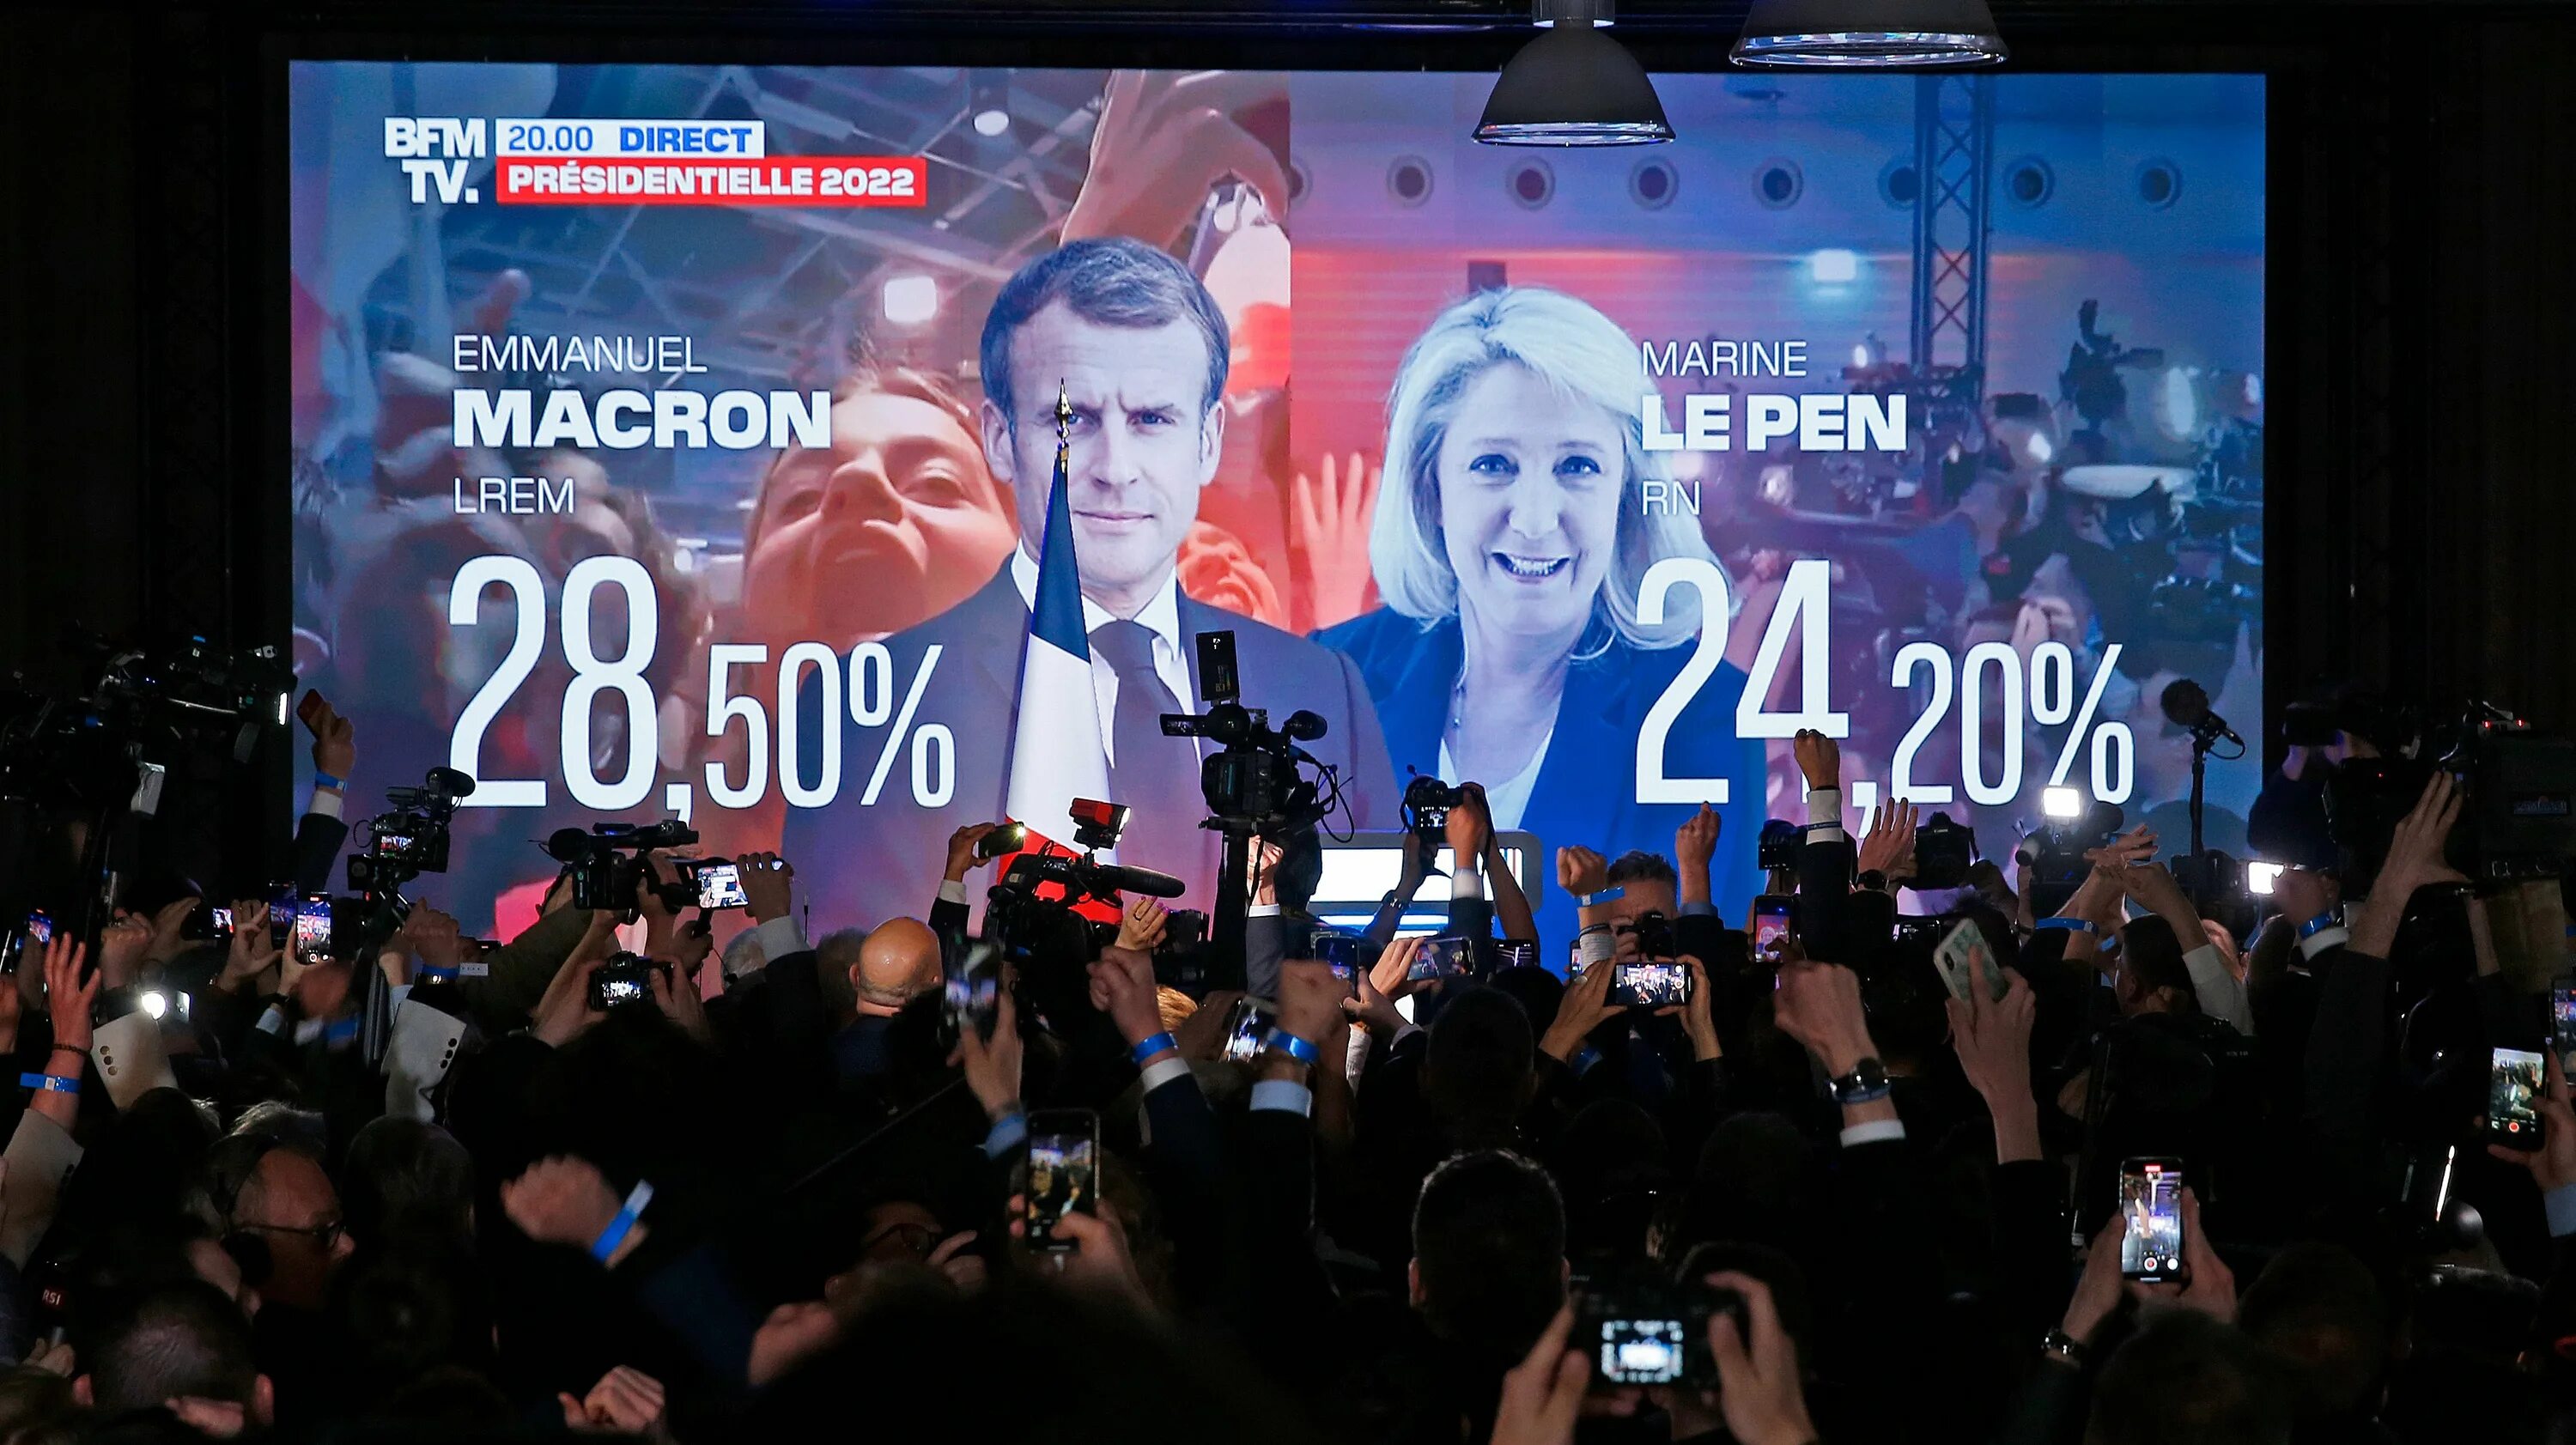 Макрон выборы во Франции 2022. Выборы президента Франции 2022. Президентские выборы во Франции (2022).